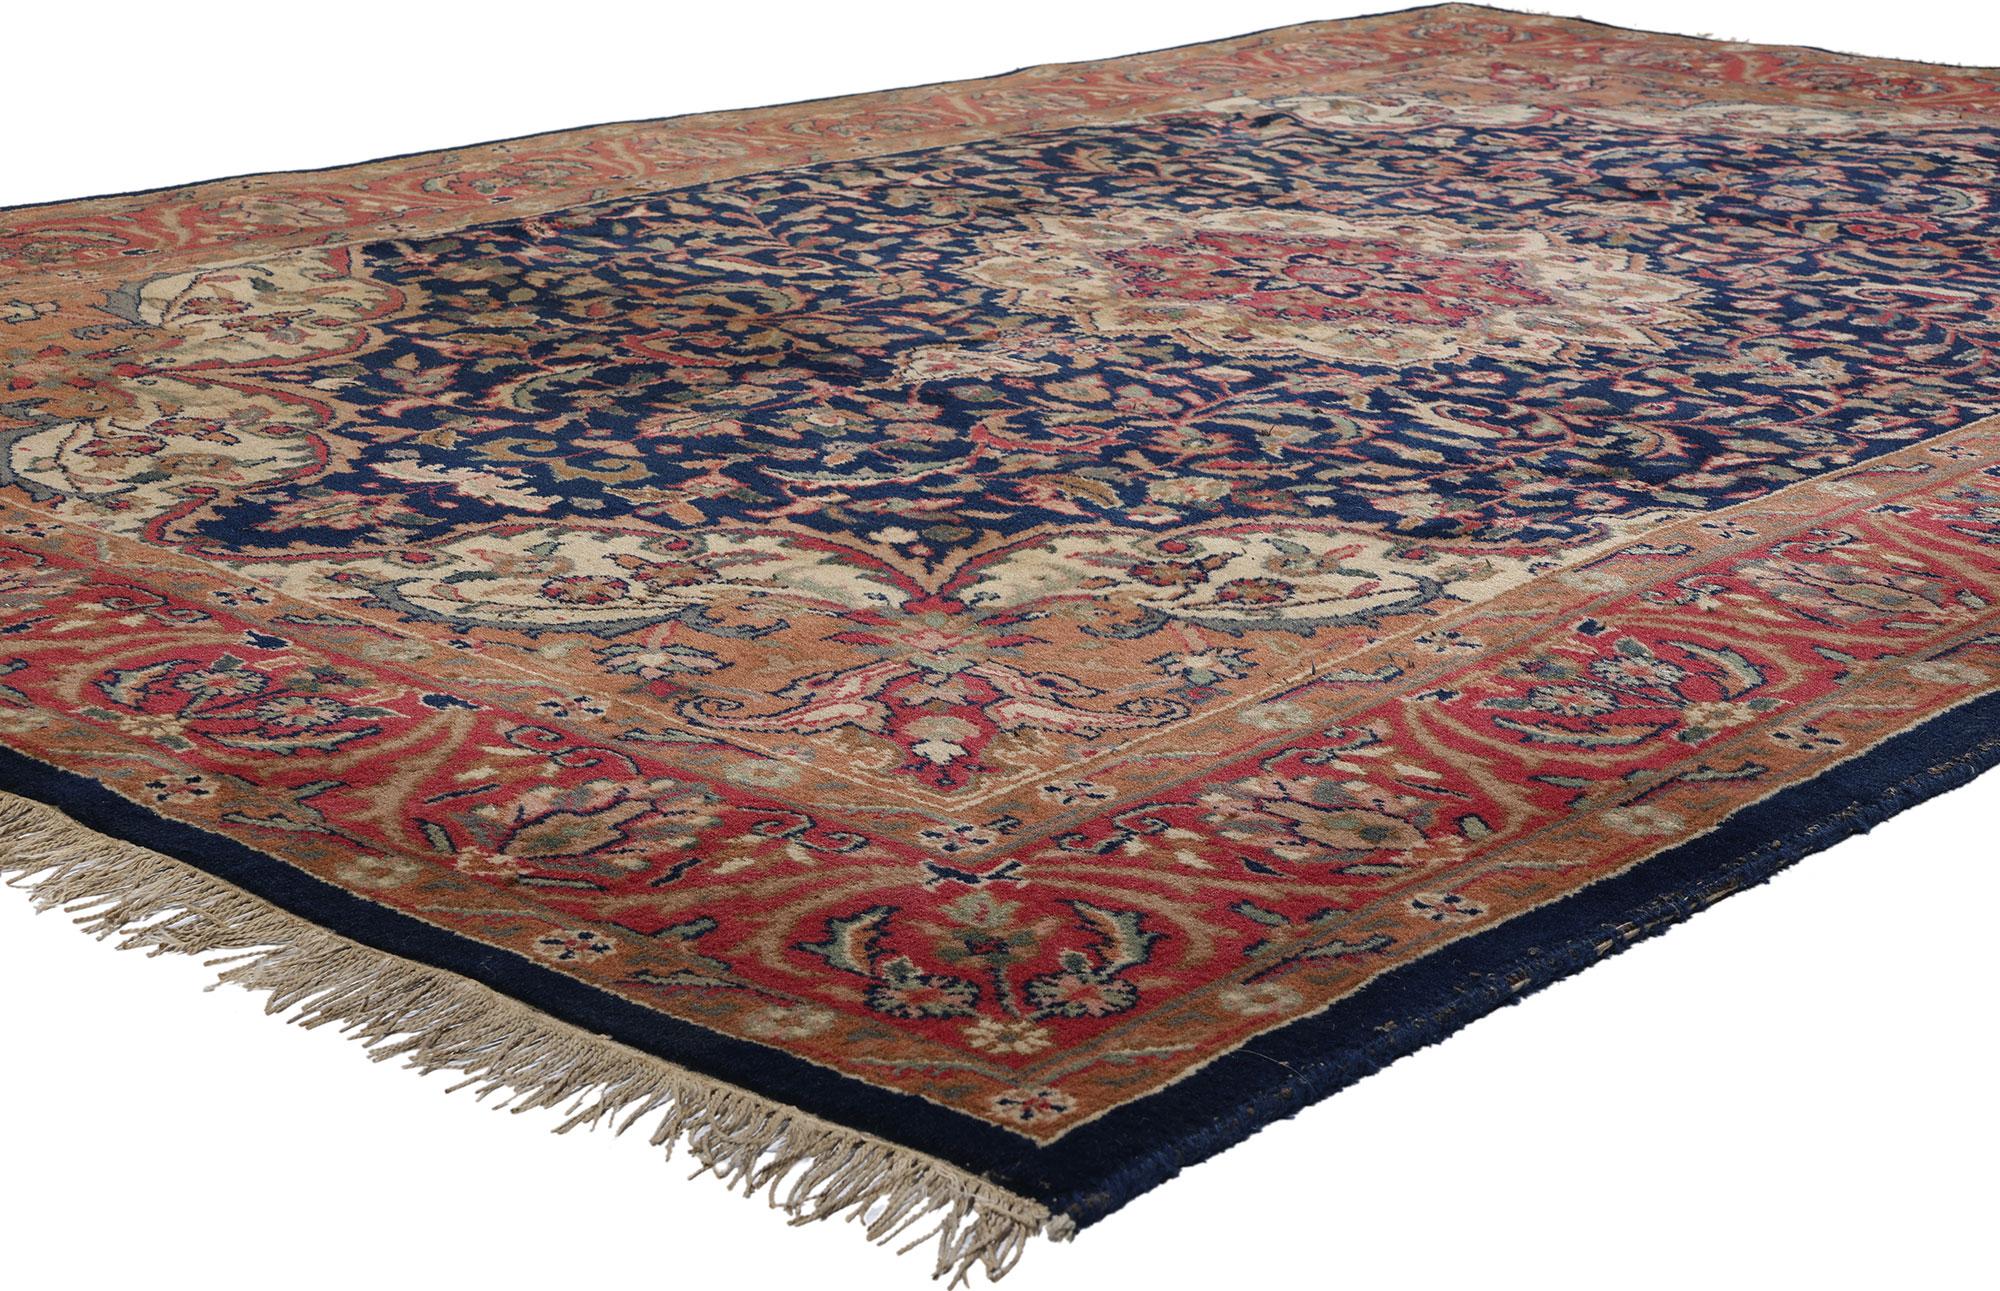 78690 Indischer Vintage Isfahan Teppich, 05'09 x 09'00. Betreten Sie das Reich zeitloser Eleganz mit diesem exquisiten handgeknüpften indischen Isfahan-Teppich aus Wolle, bei dem Opulenz und Tradition in jedem sorgfältig gewebten Faden